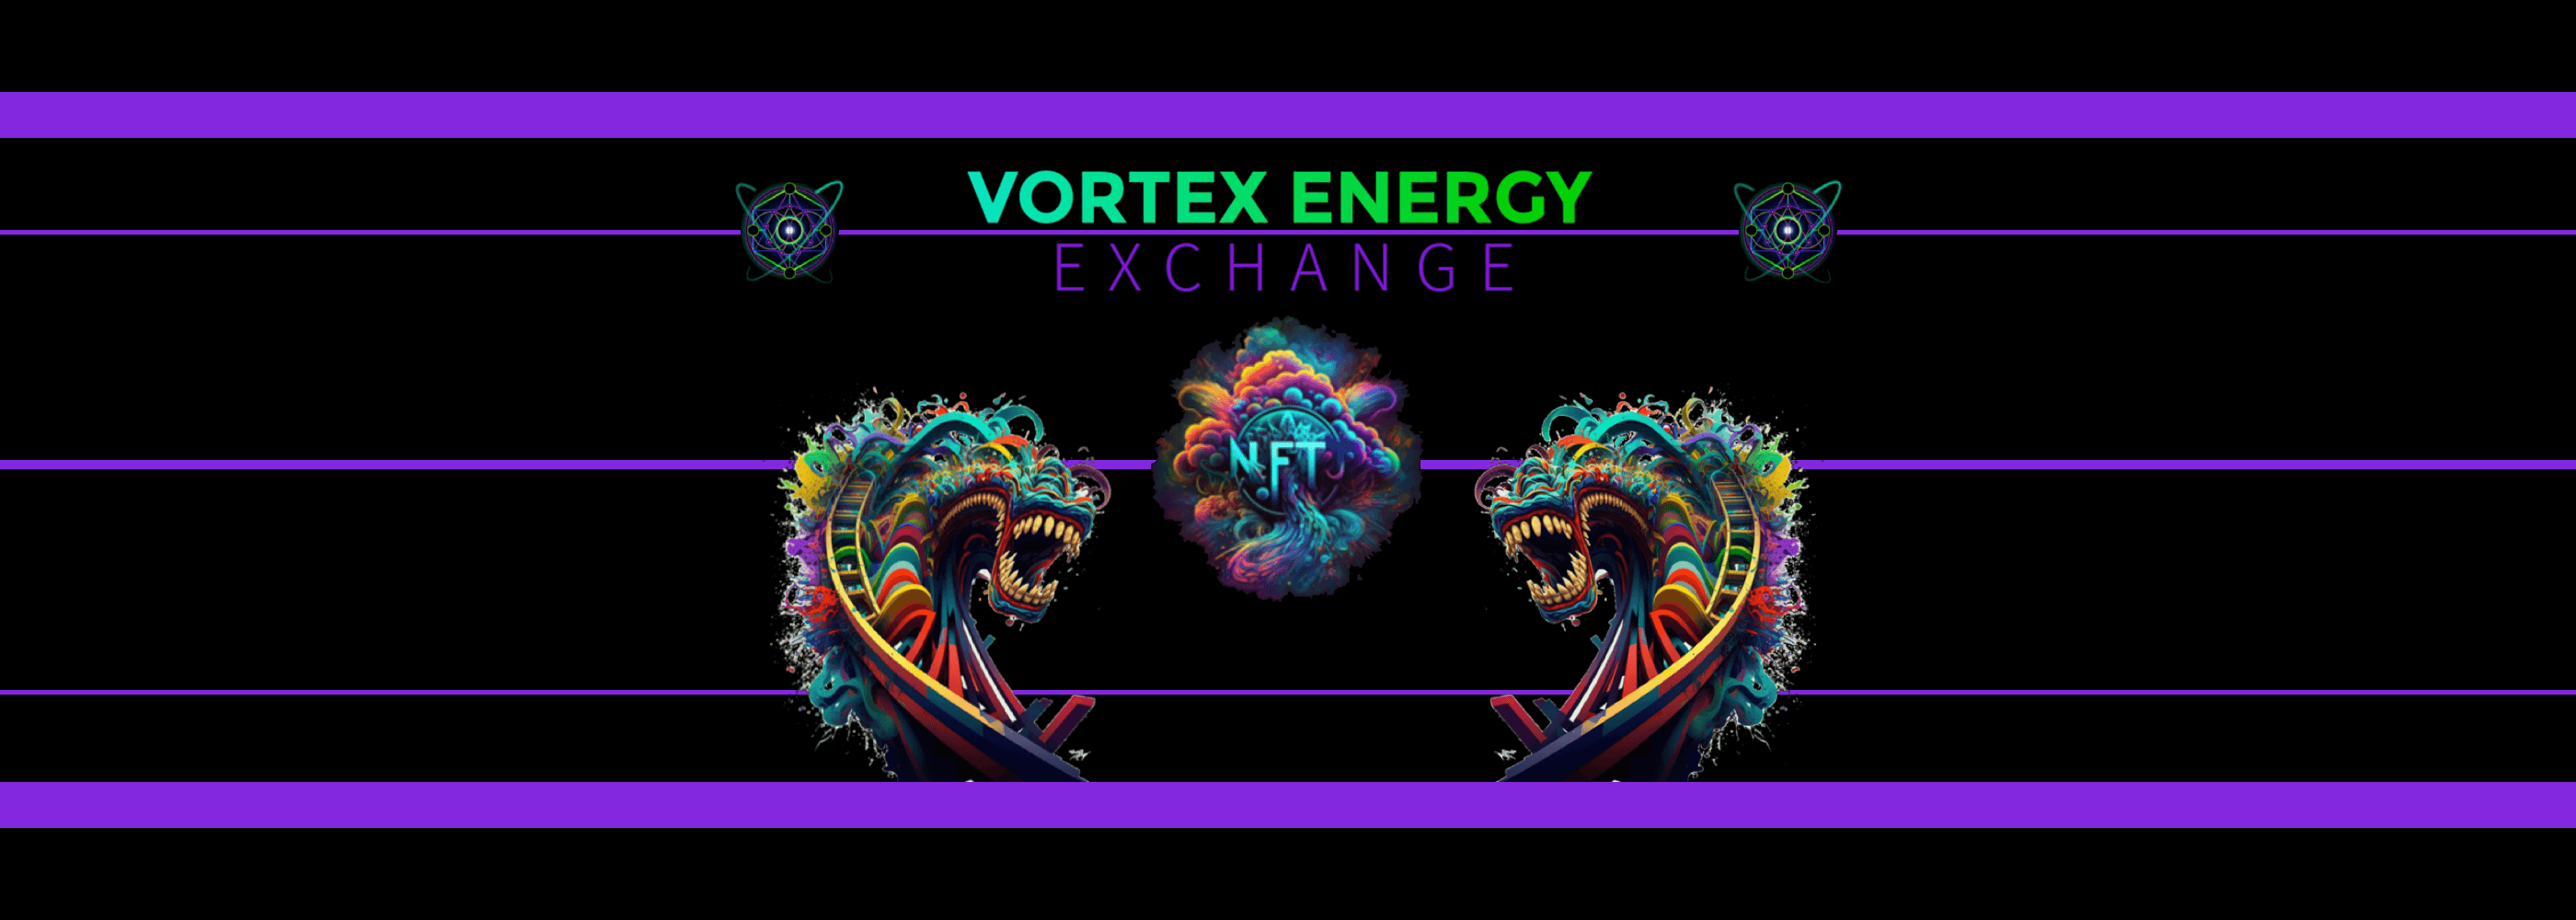 Vortex_Energy_Exchange banner